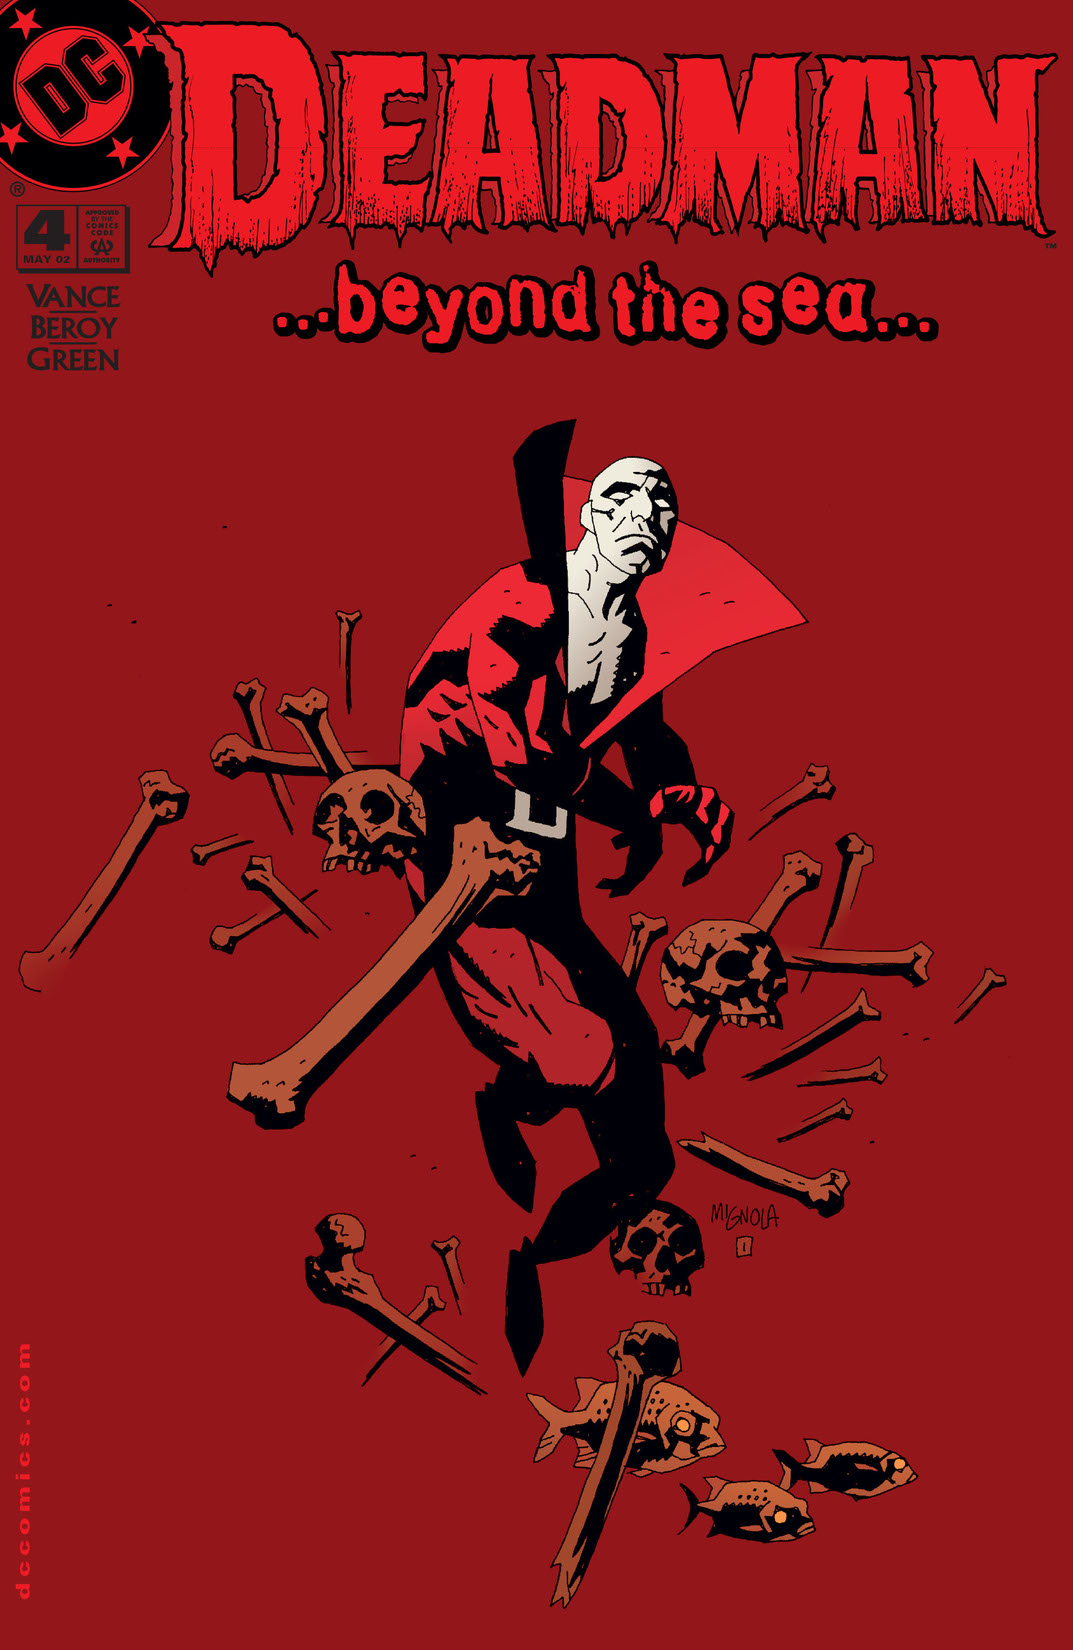 Deadman (2001-) #4 preview images